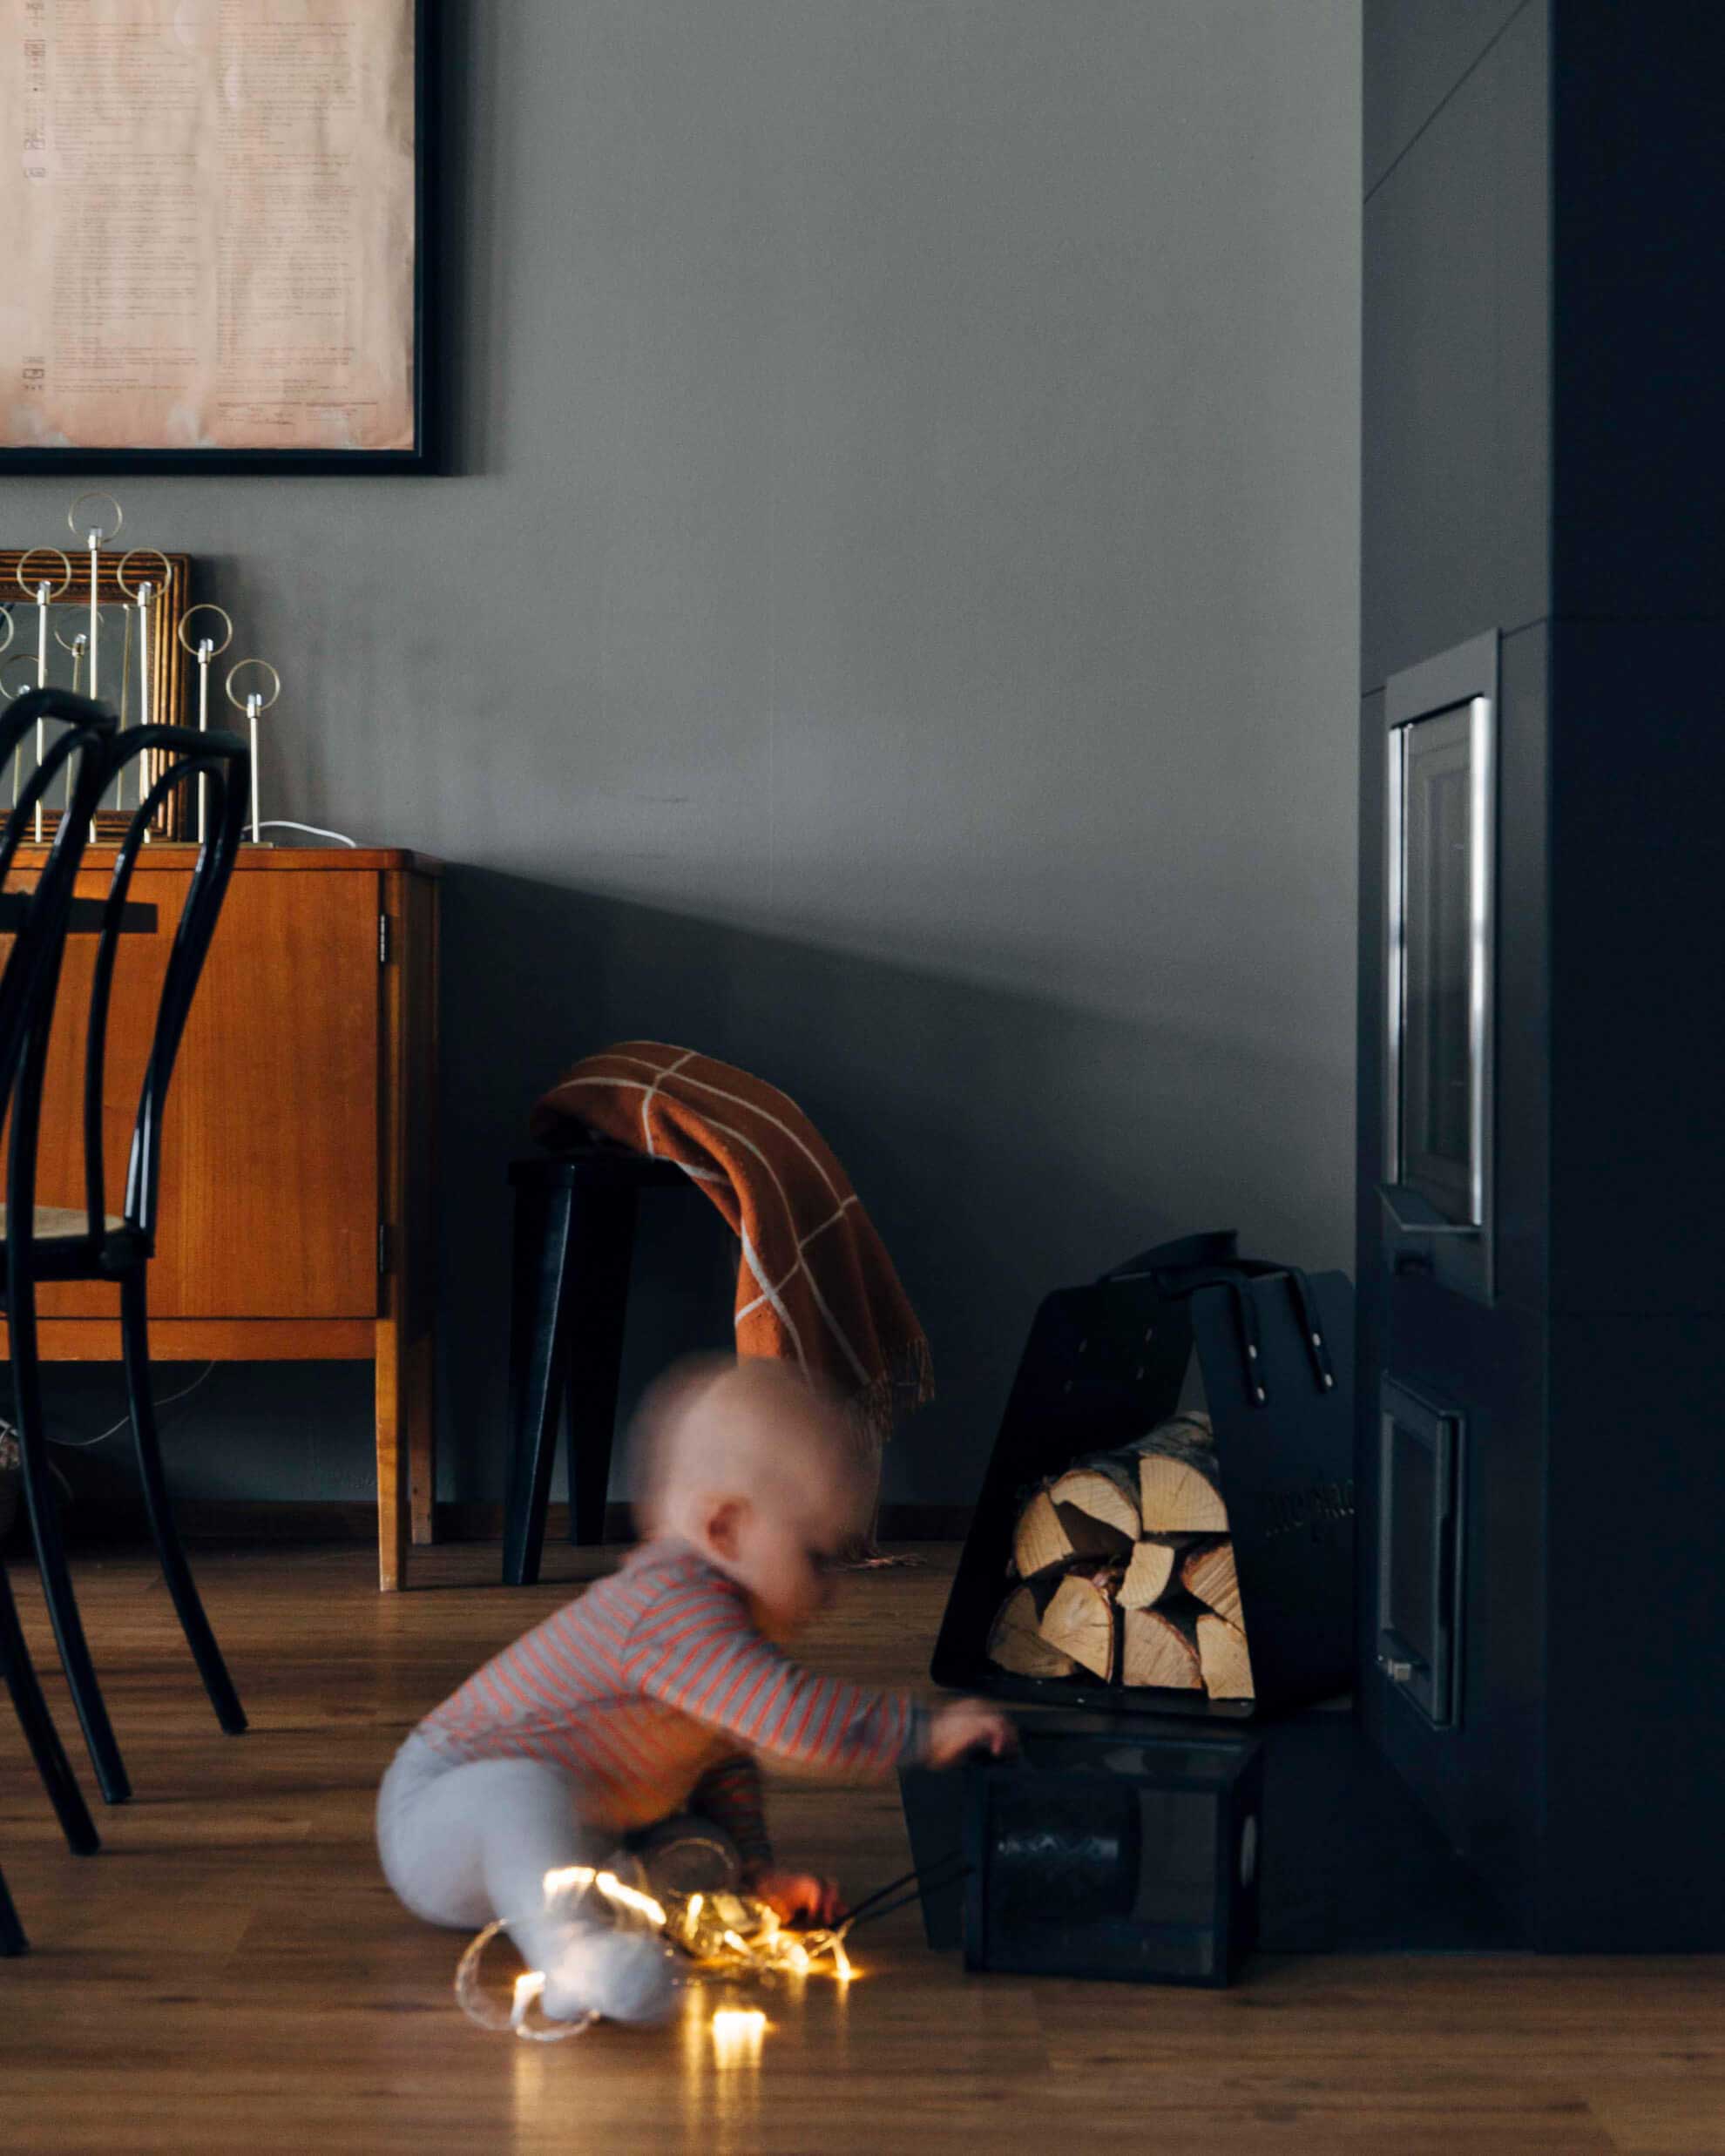 Der NunnaUuni Feuerstelle bietet 24 Stunden lang angenehme Wärme